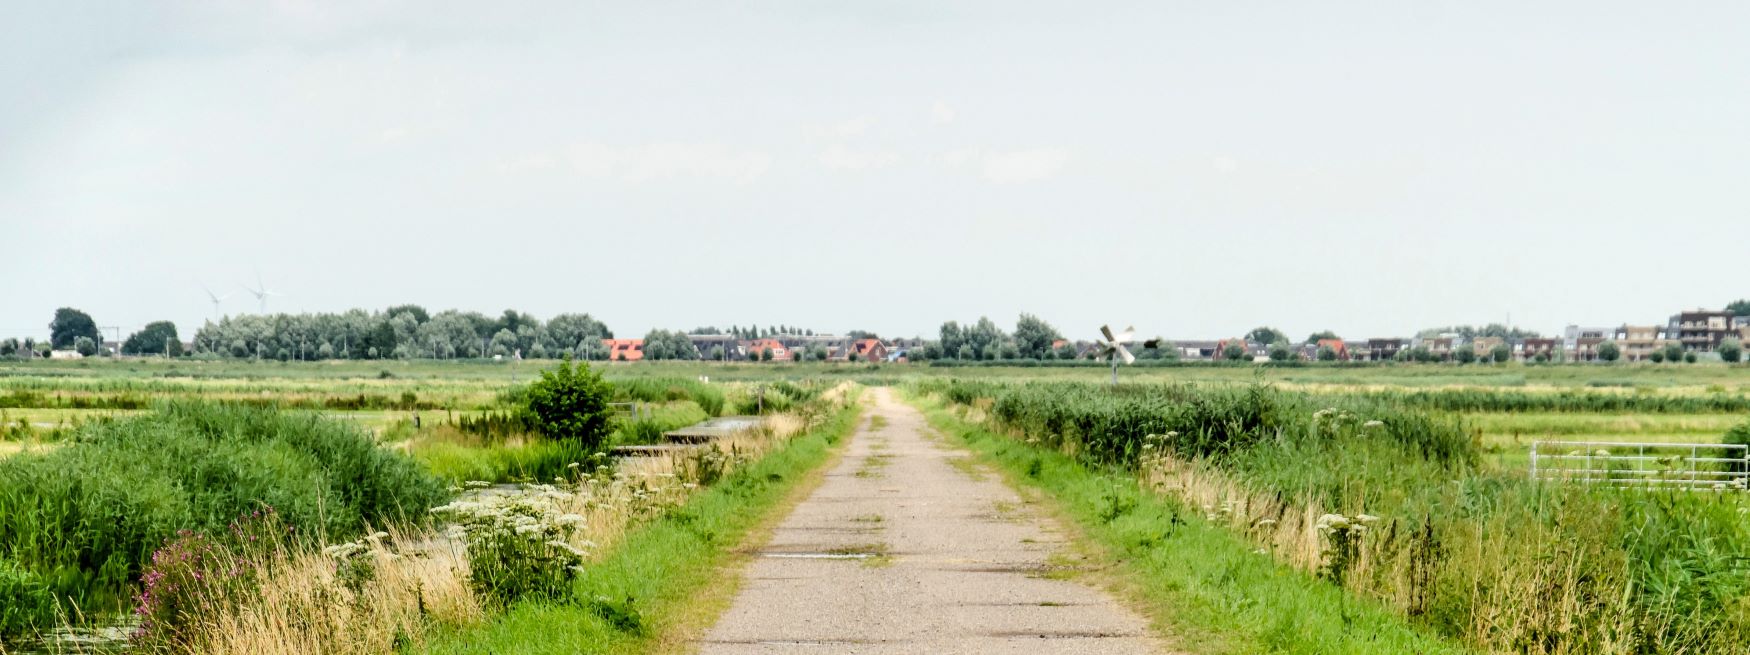 de polder van lansingerland met in de verte het dorpje Berkel.